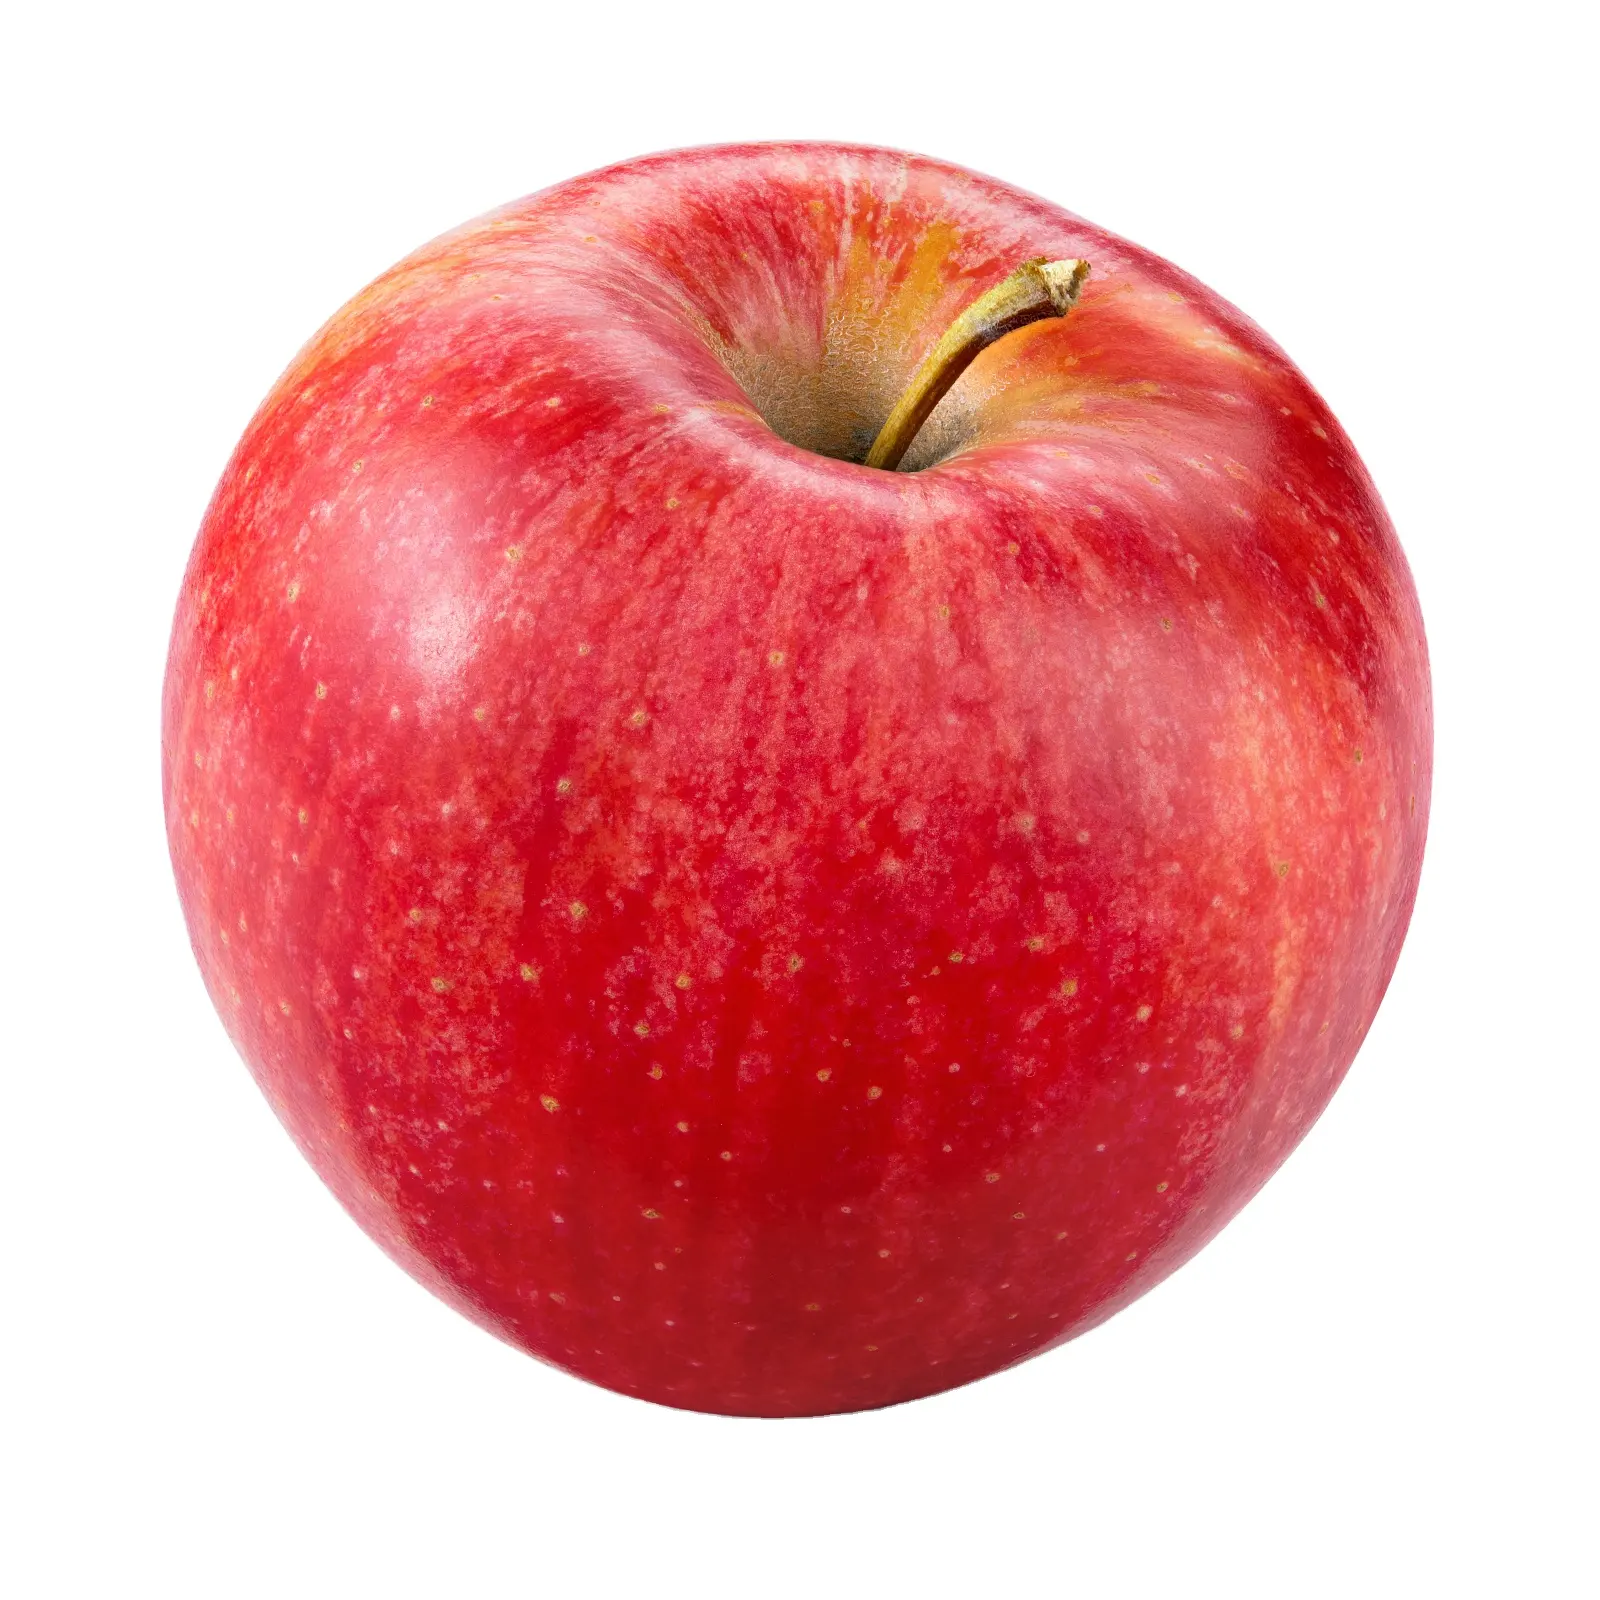 Tanaman baru apel merah segar Harga Murah apel segar fuji grosir buah segar apple